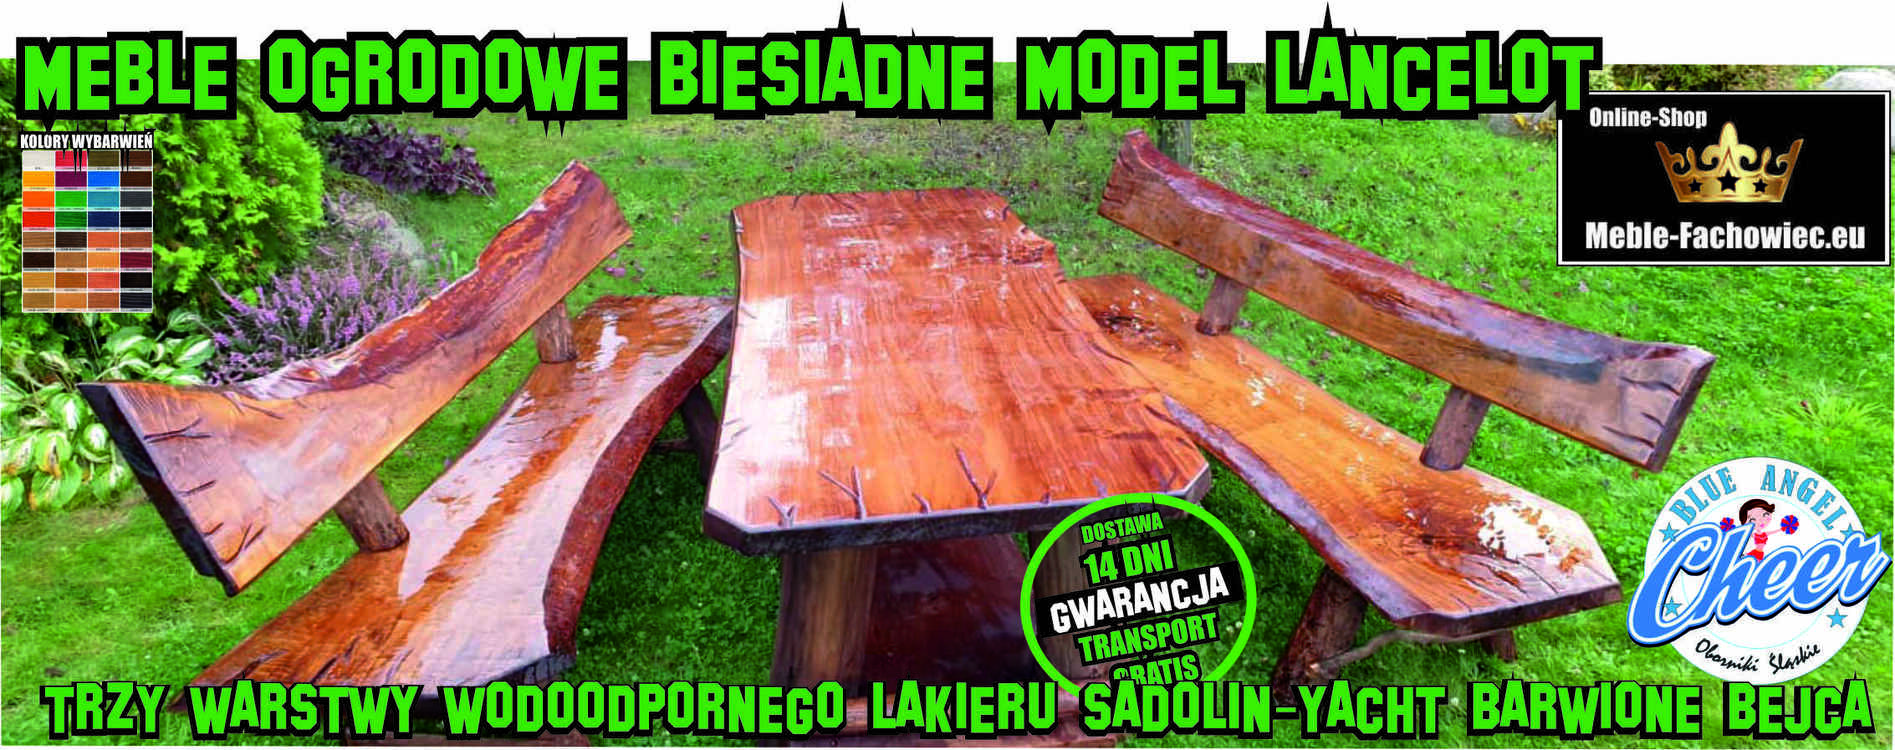 Model Lancelot meble ogrodowe biesiadne drewniane